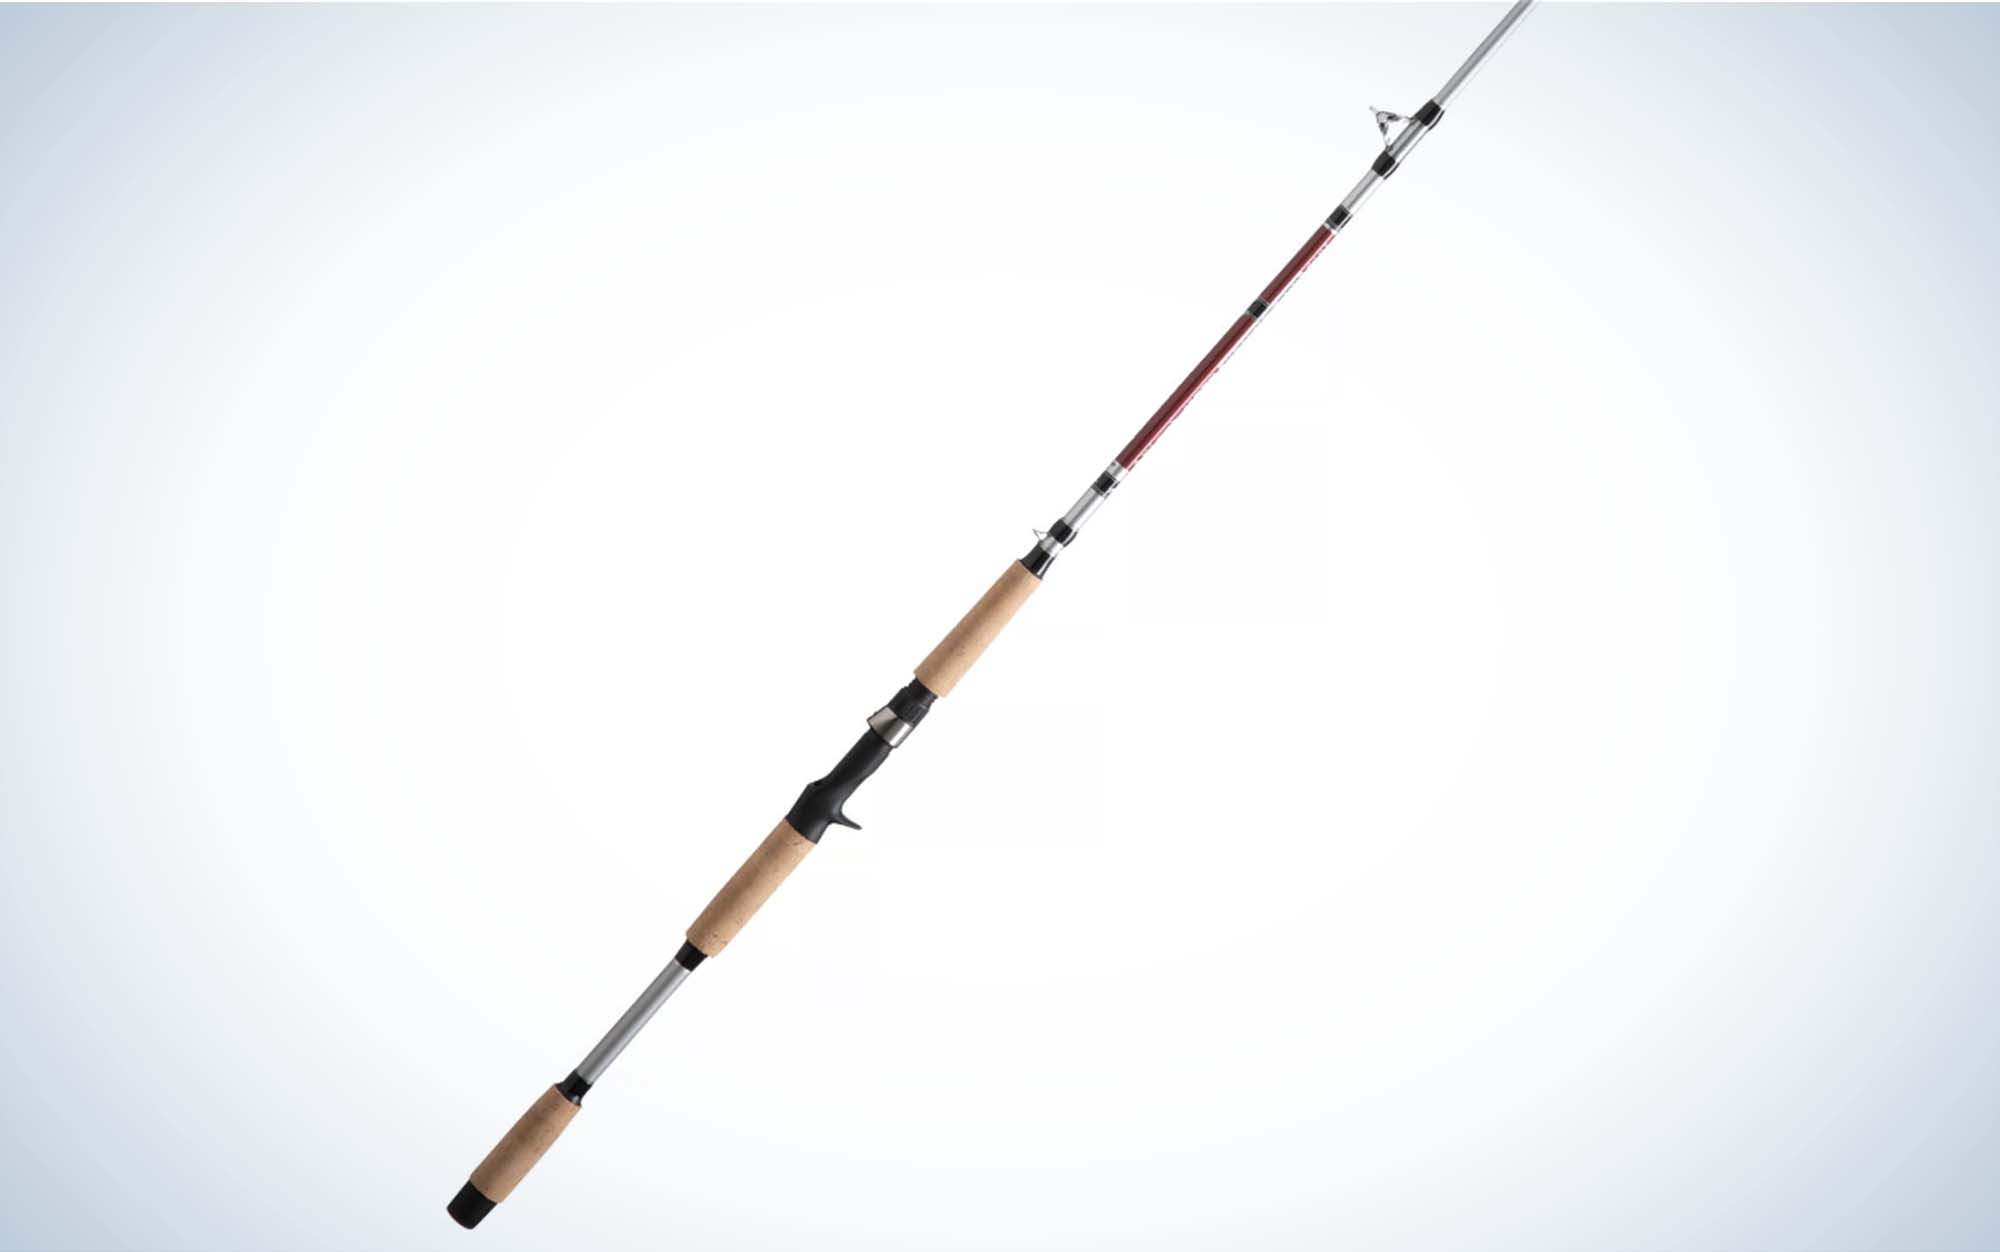 The BânâM Poles Bumping Rod is the best catfish rod for bumping bottom.